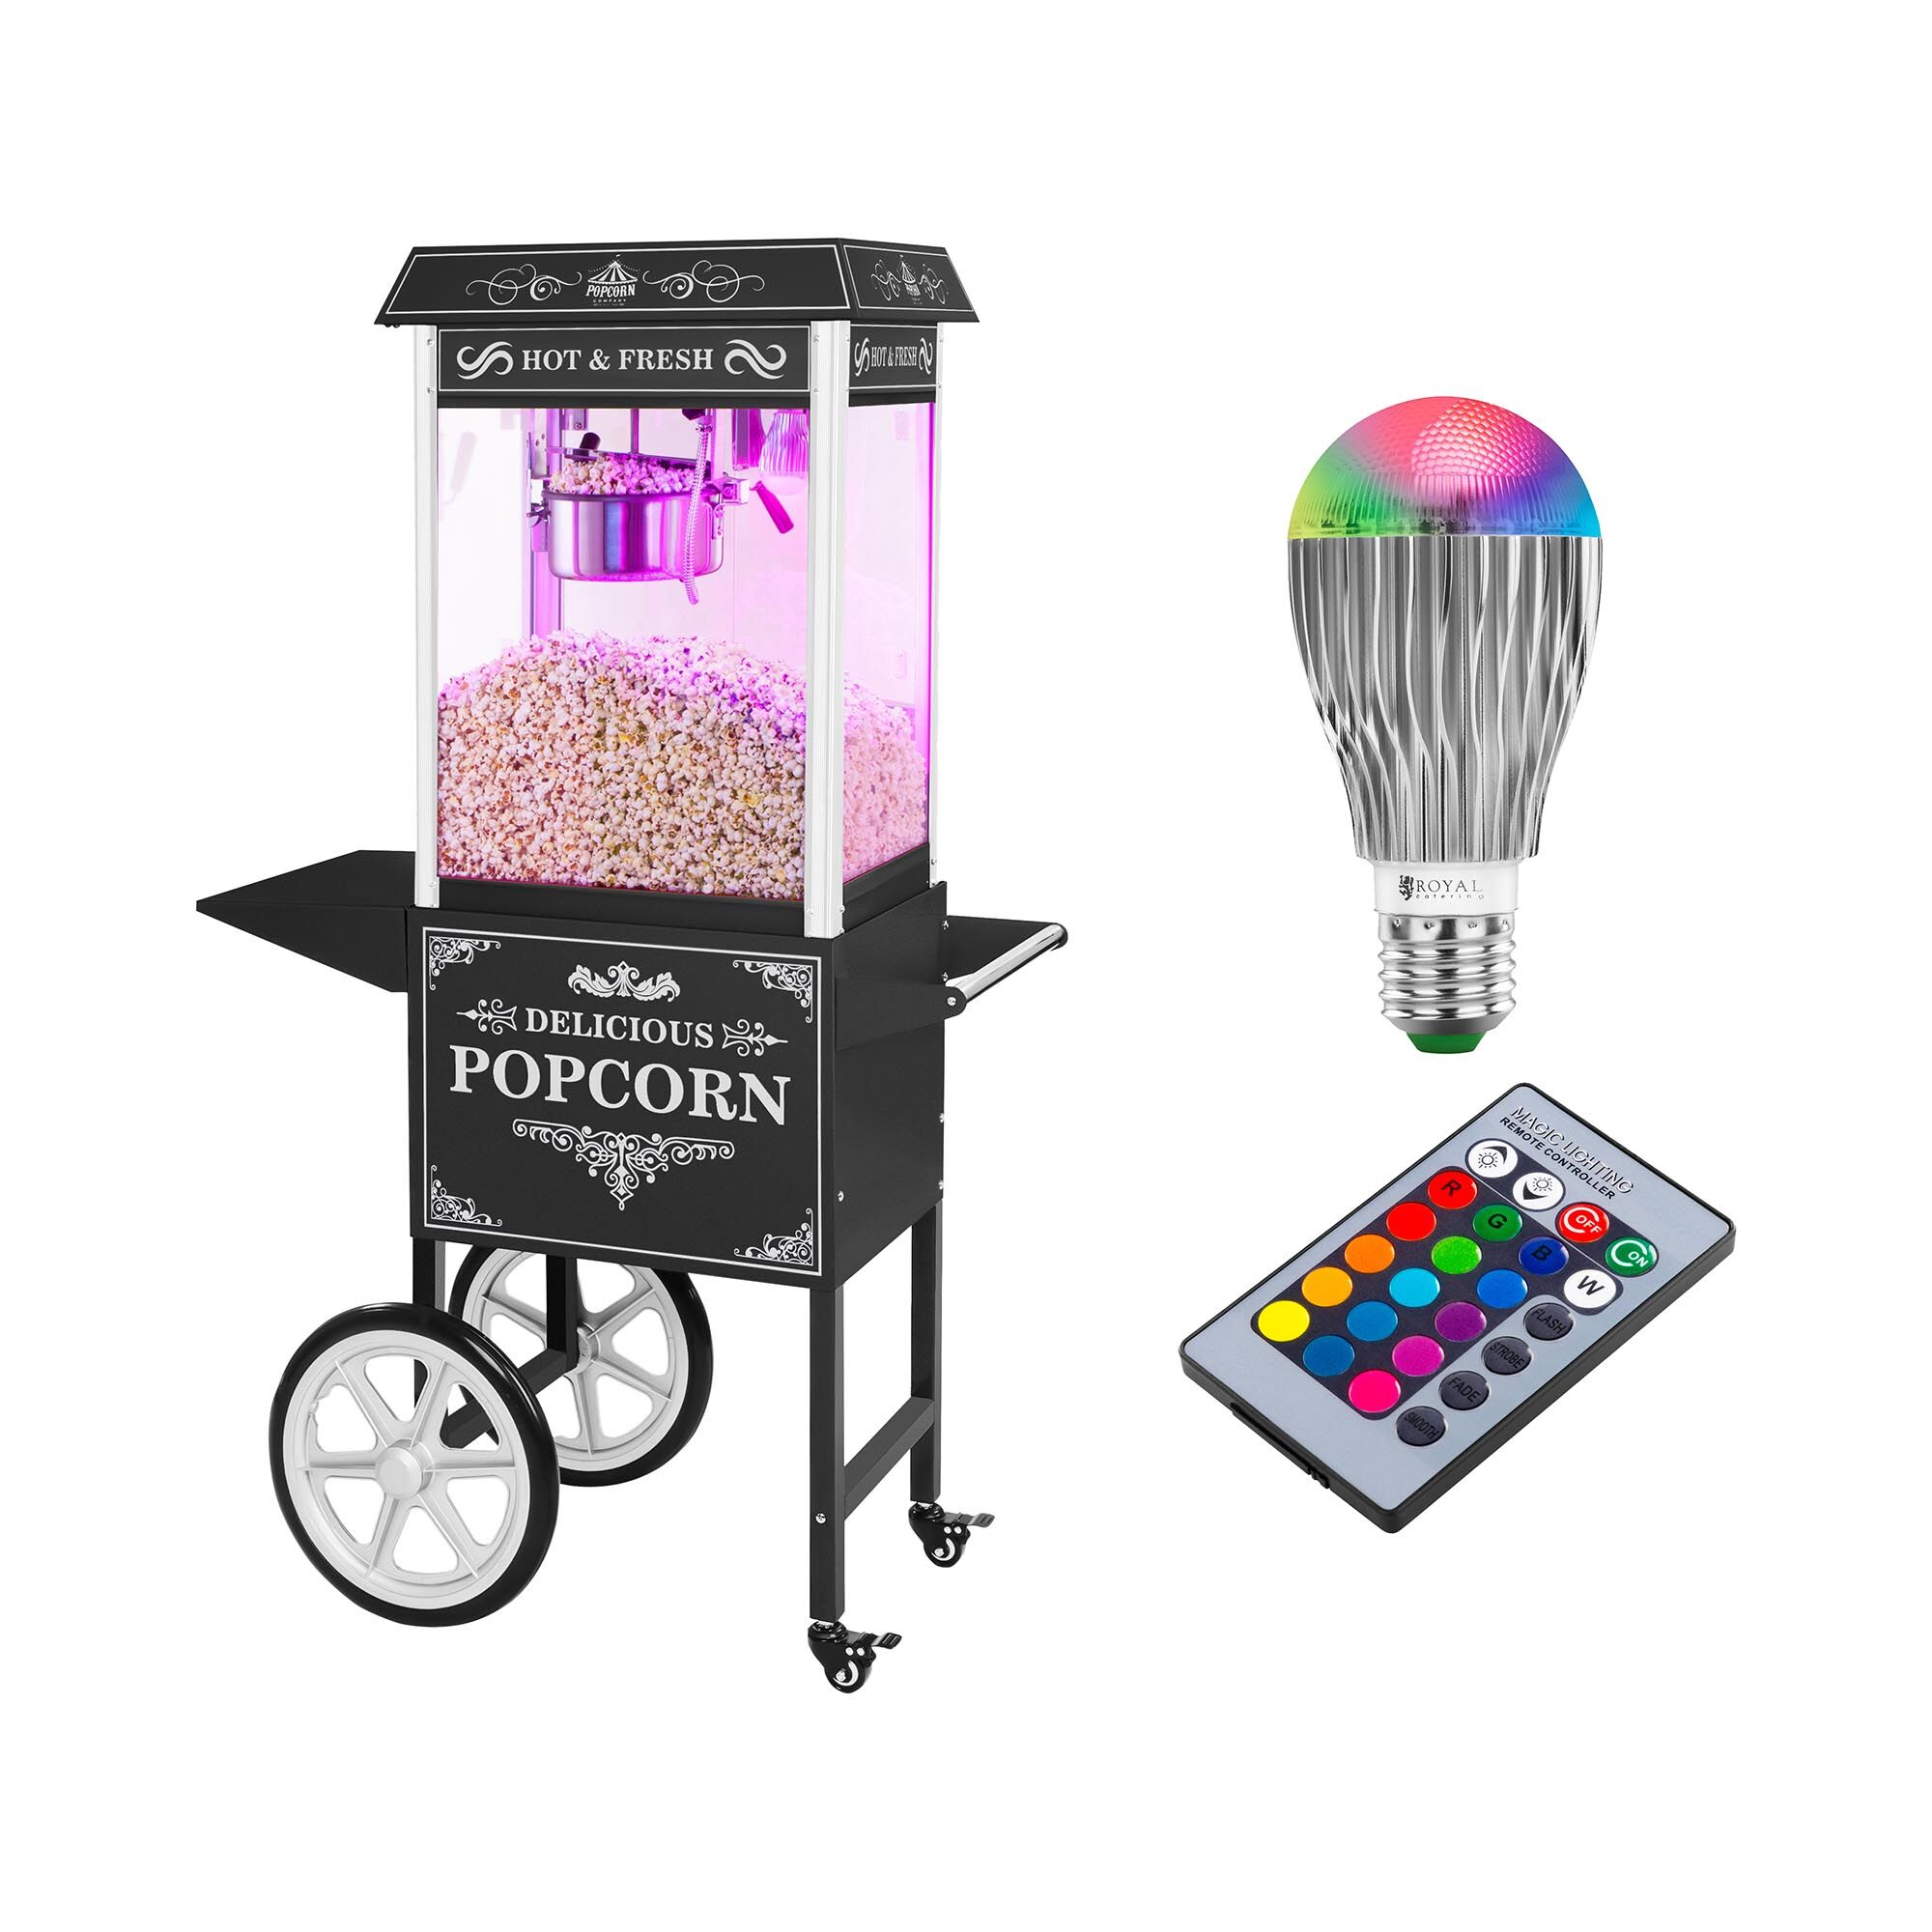 Royal Catering Stroj na popkorn s vozíkem a LED osvětlením - retro vzhled - černý RCPW-16.2 Popcorn Machine LED Set